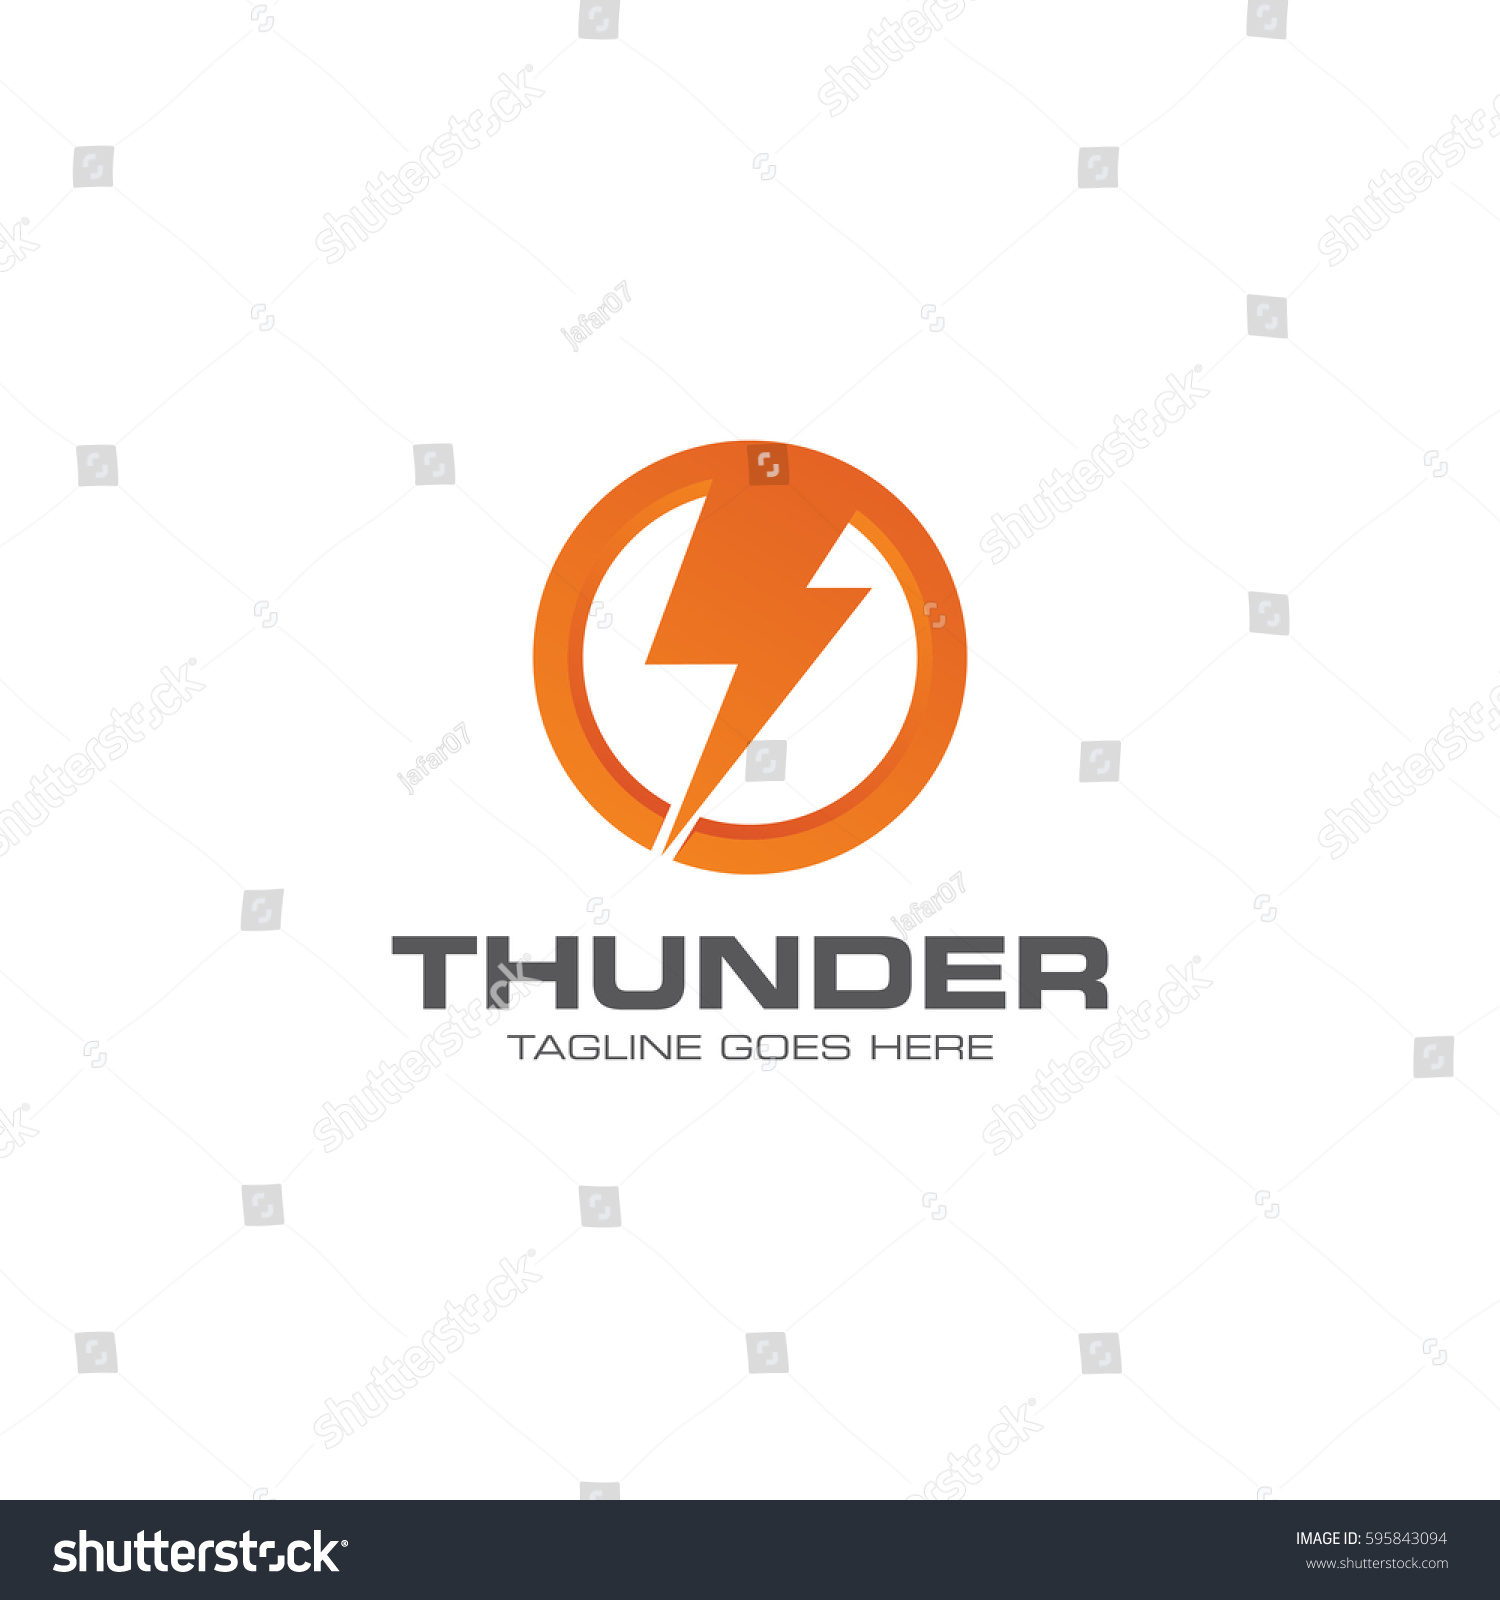 Edit Vectors Free Online - thunder logo | Shutterstock Editor